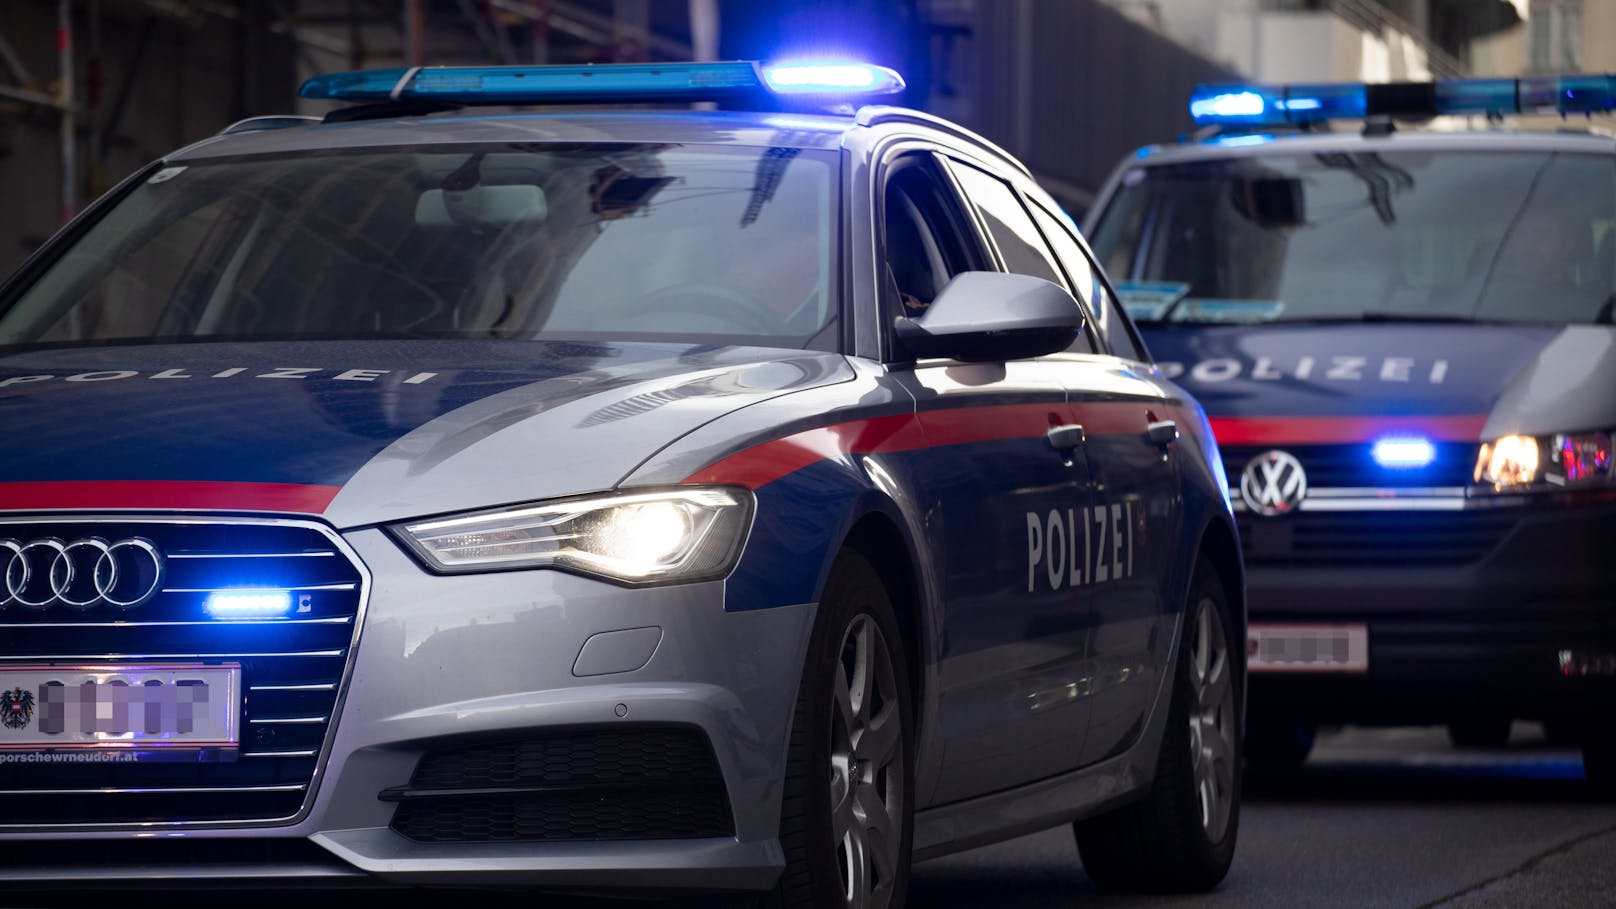 Fahrzeuge der Wiener Polizei im Einsatz. (Symbolbild)